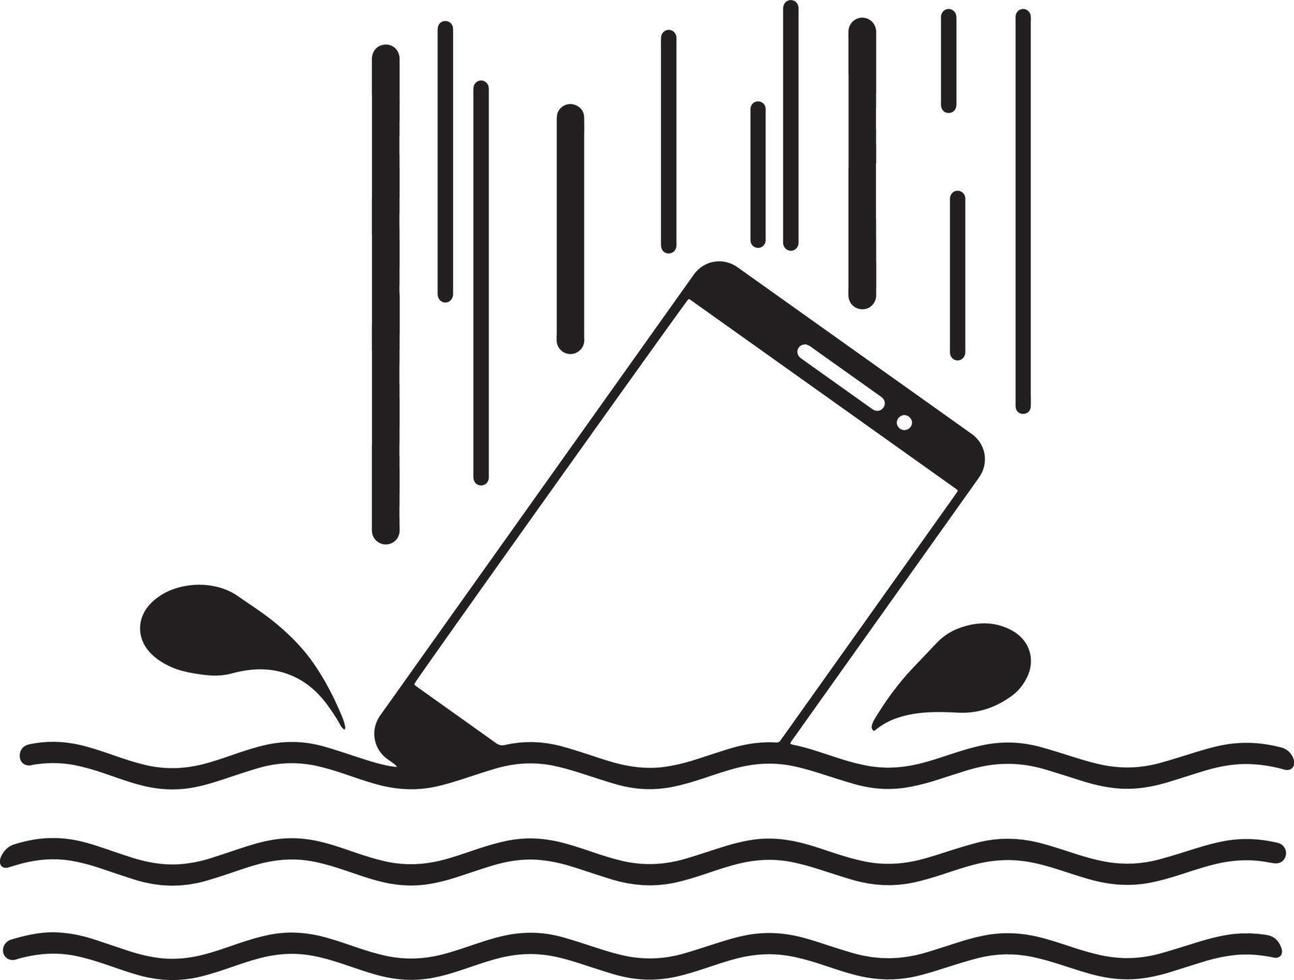 caída de teléfono inteligente en el agua con salpicaduras vector